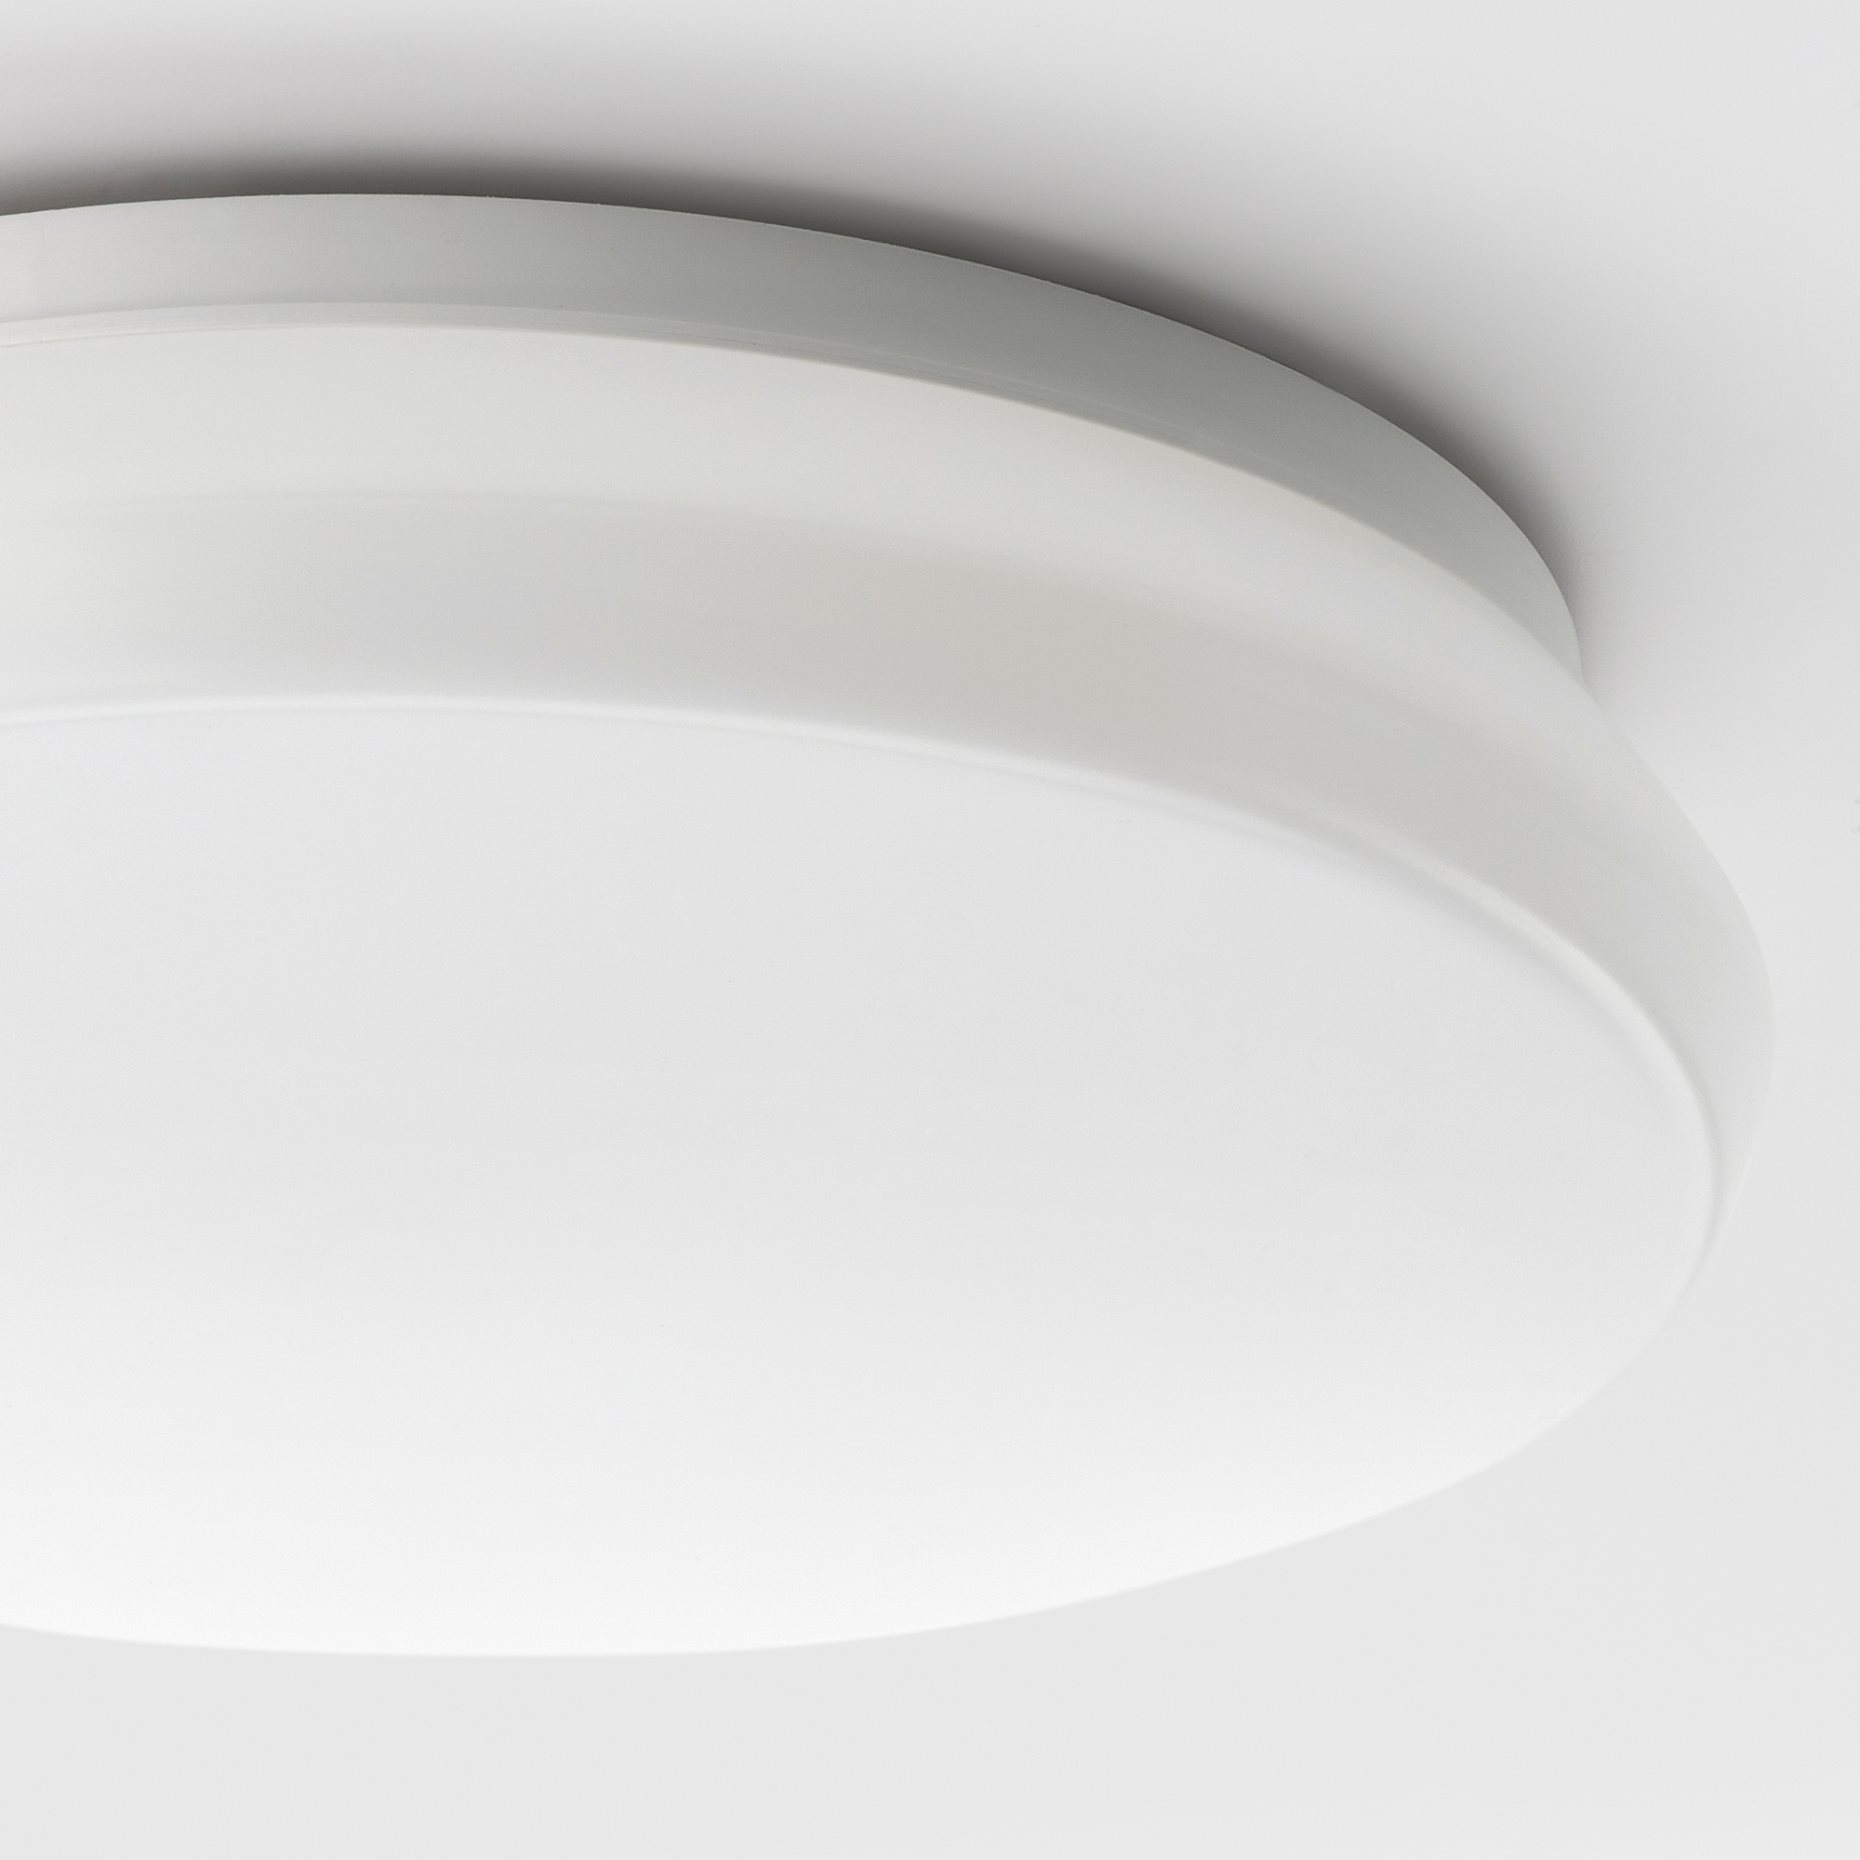 STOFTMOLN, LED лампа за таван/стена, безжично регул. на светлината, 24 см, 304.974.90